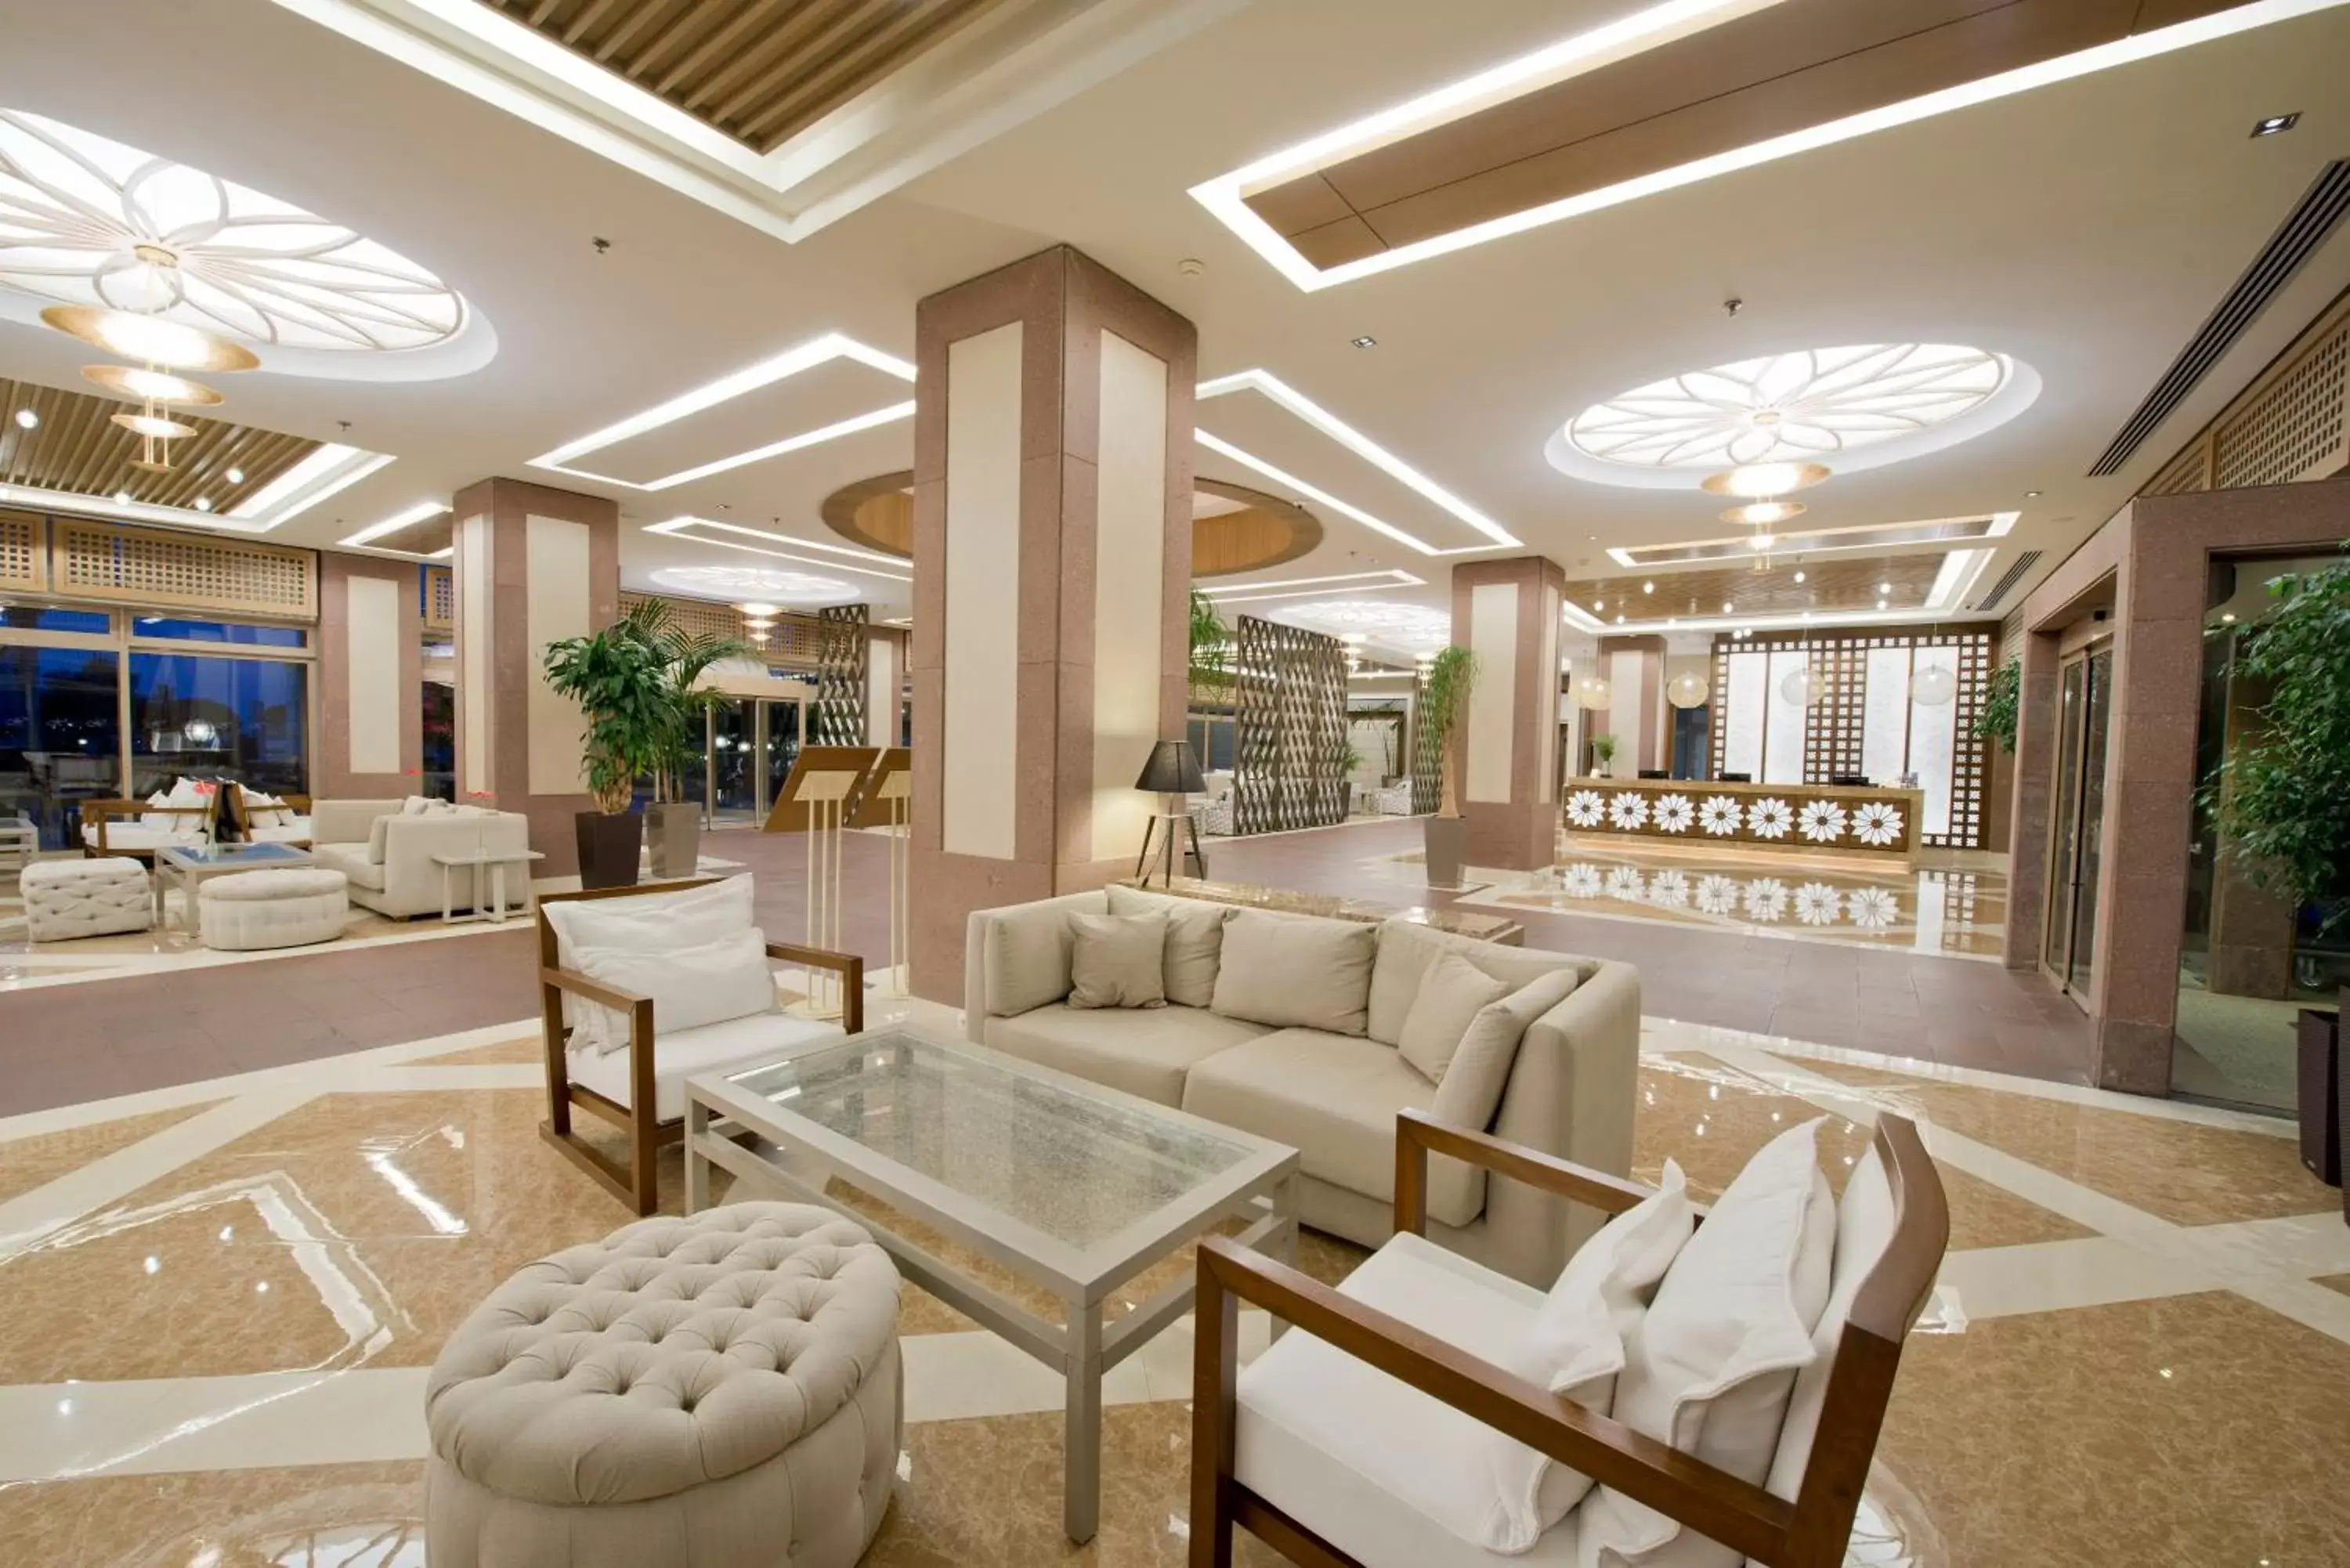 Lobby or reception, Lobby/Reception in Xanadu Resort Hotel - High Class All Inclusive